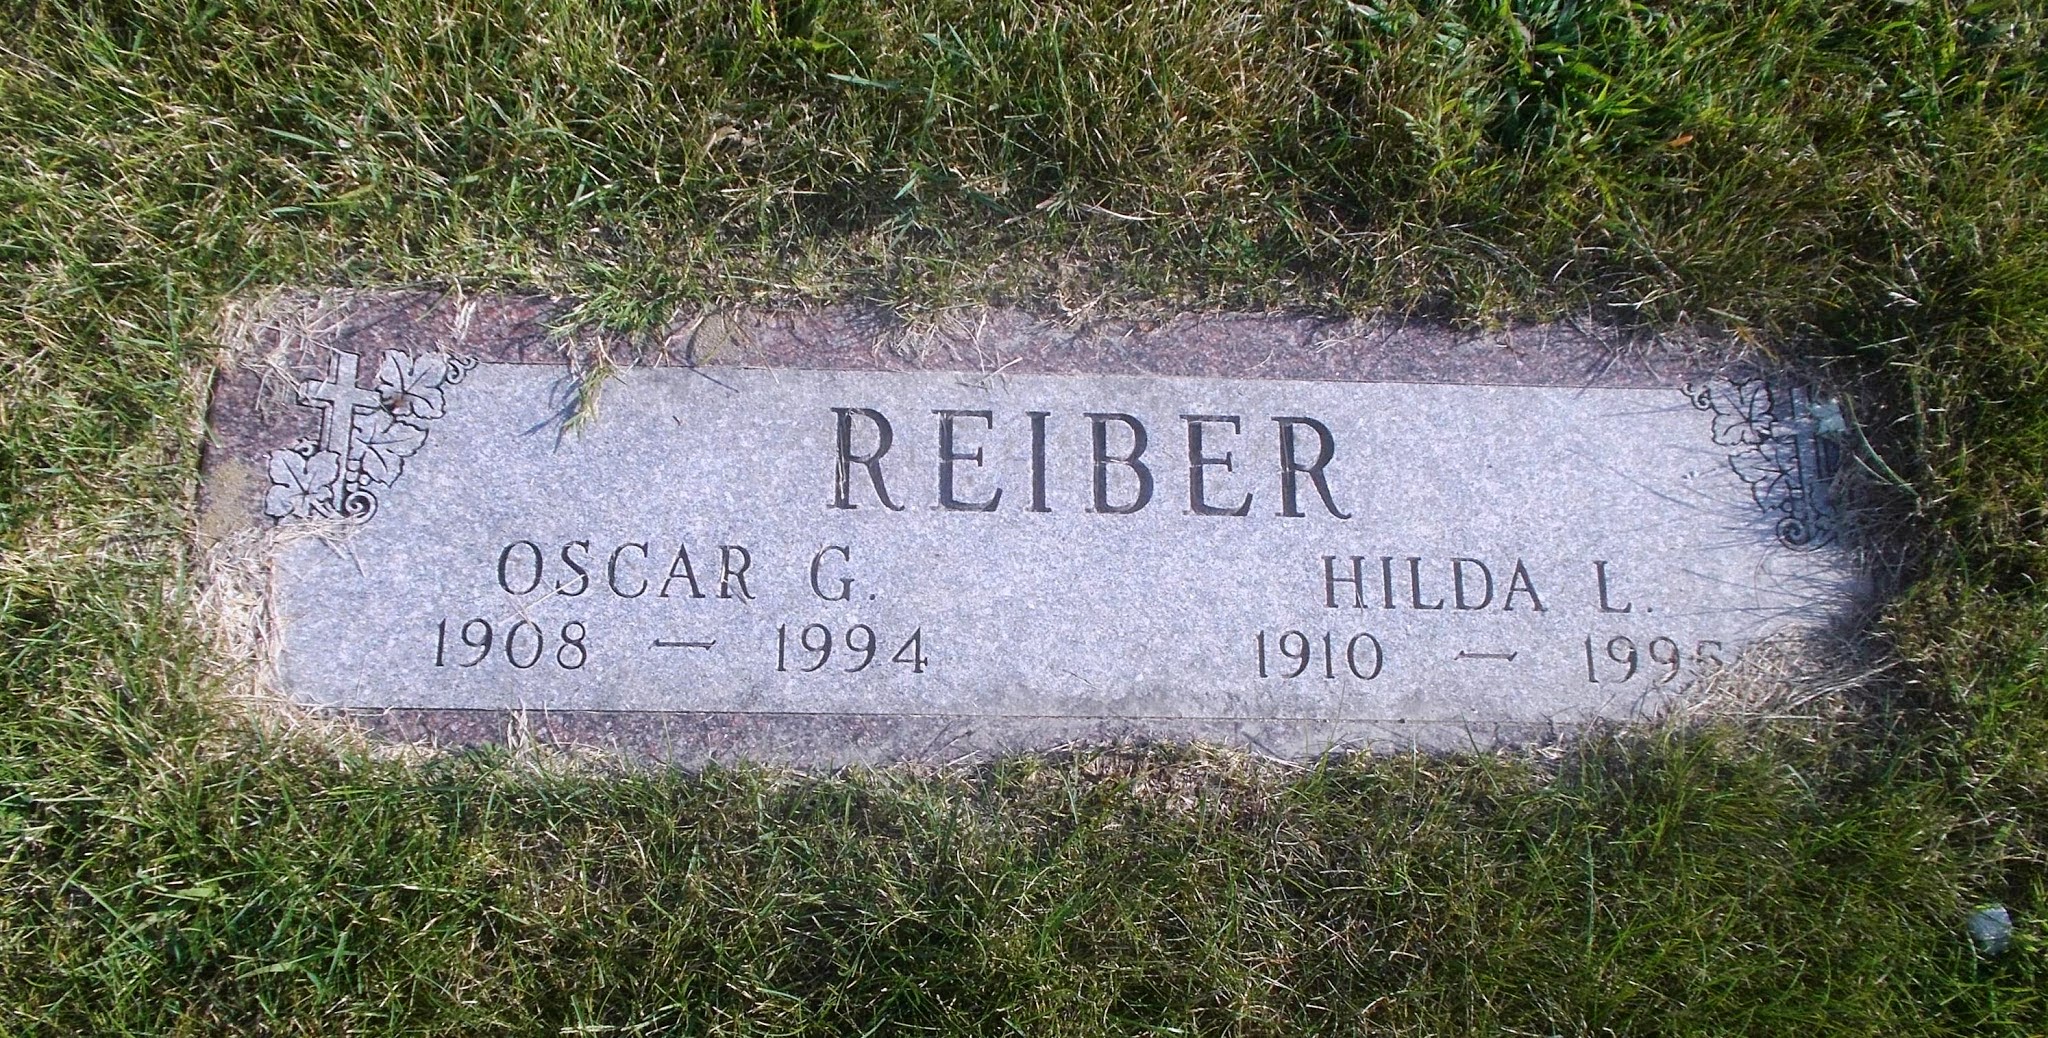 Oscar G Reiber